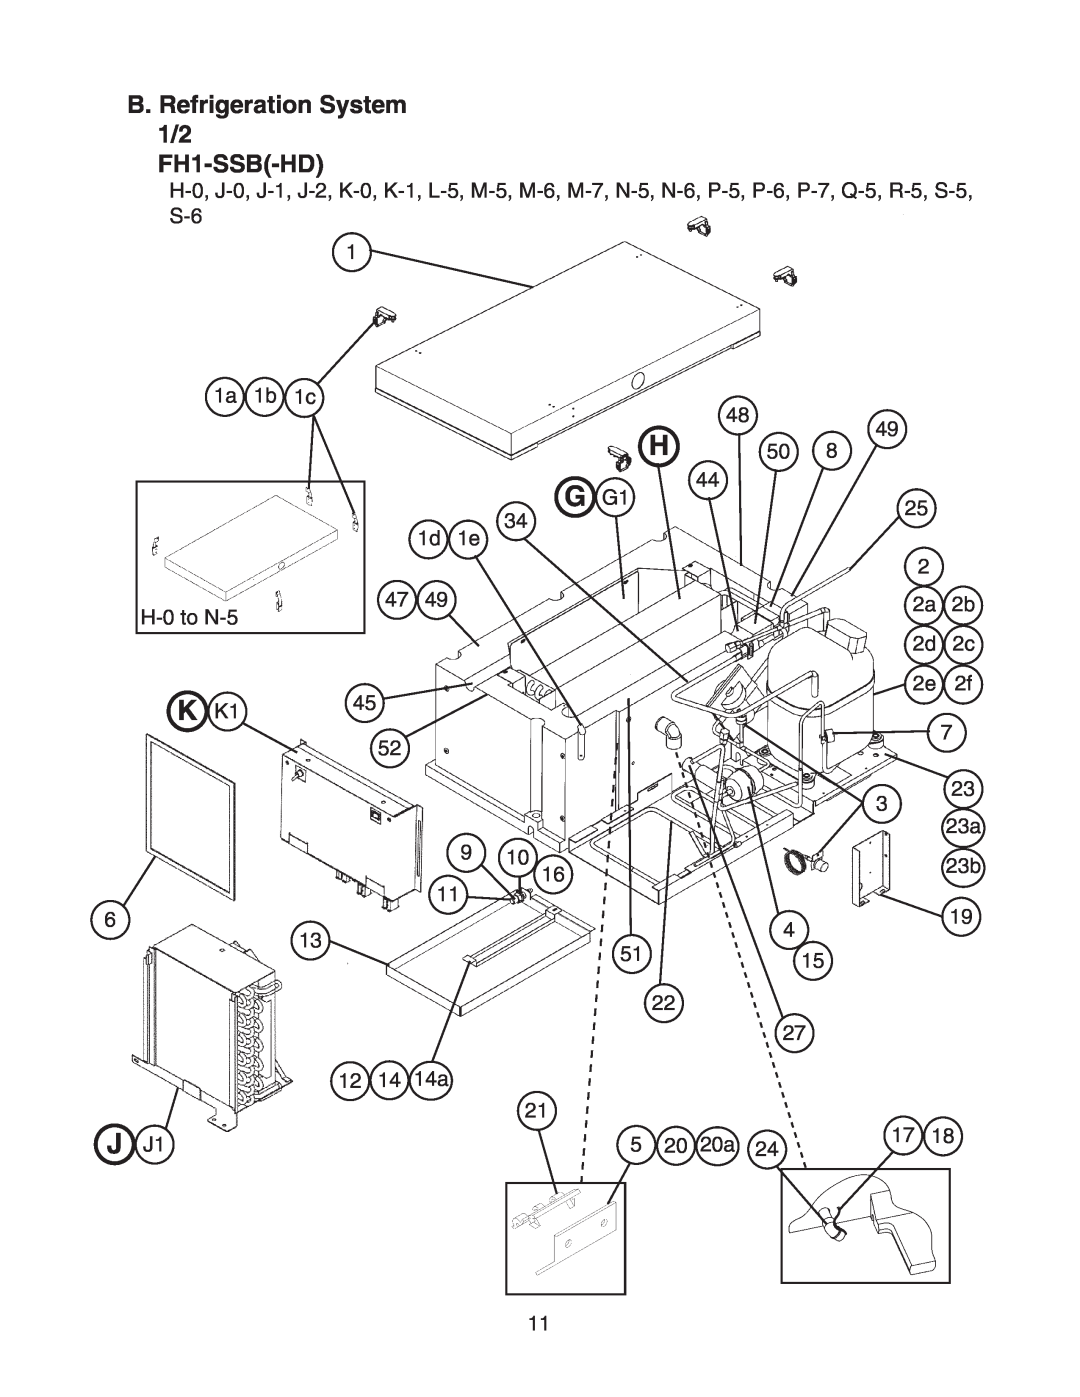 Hoshizaki FH1-SSB(-HD) manual K K1, J J1, B. Refrigeration System 1/2 FH1-SSB-HD 